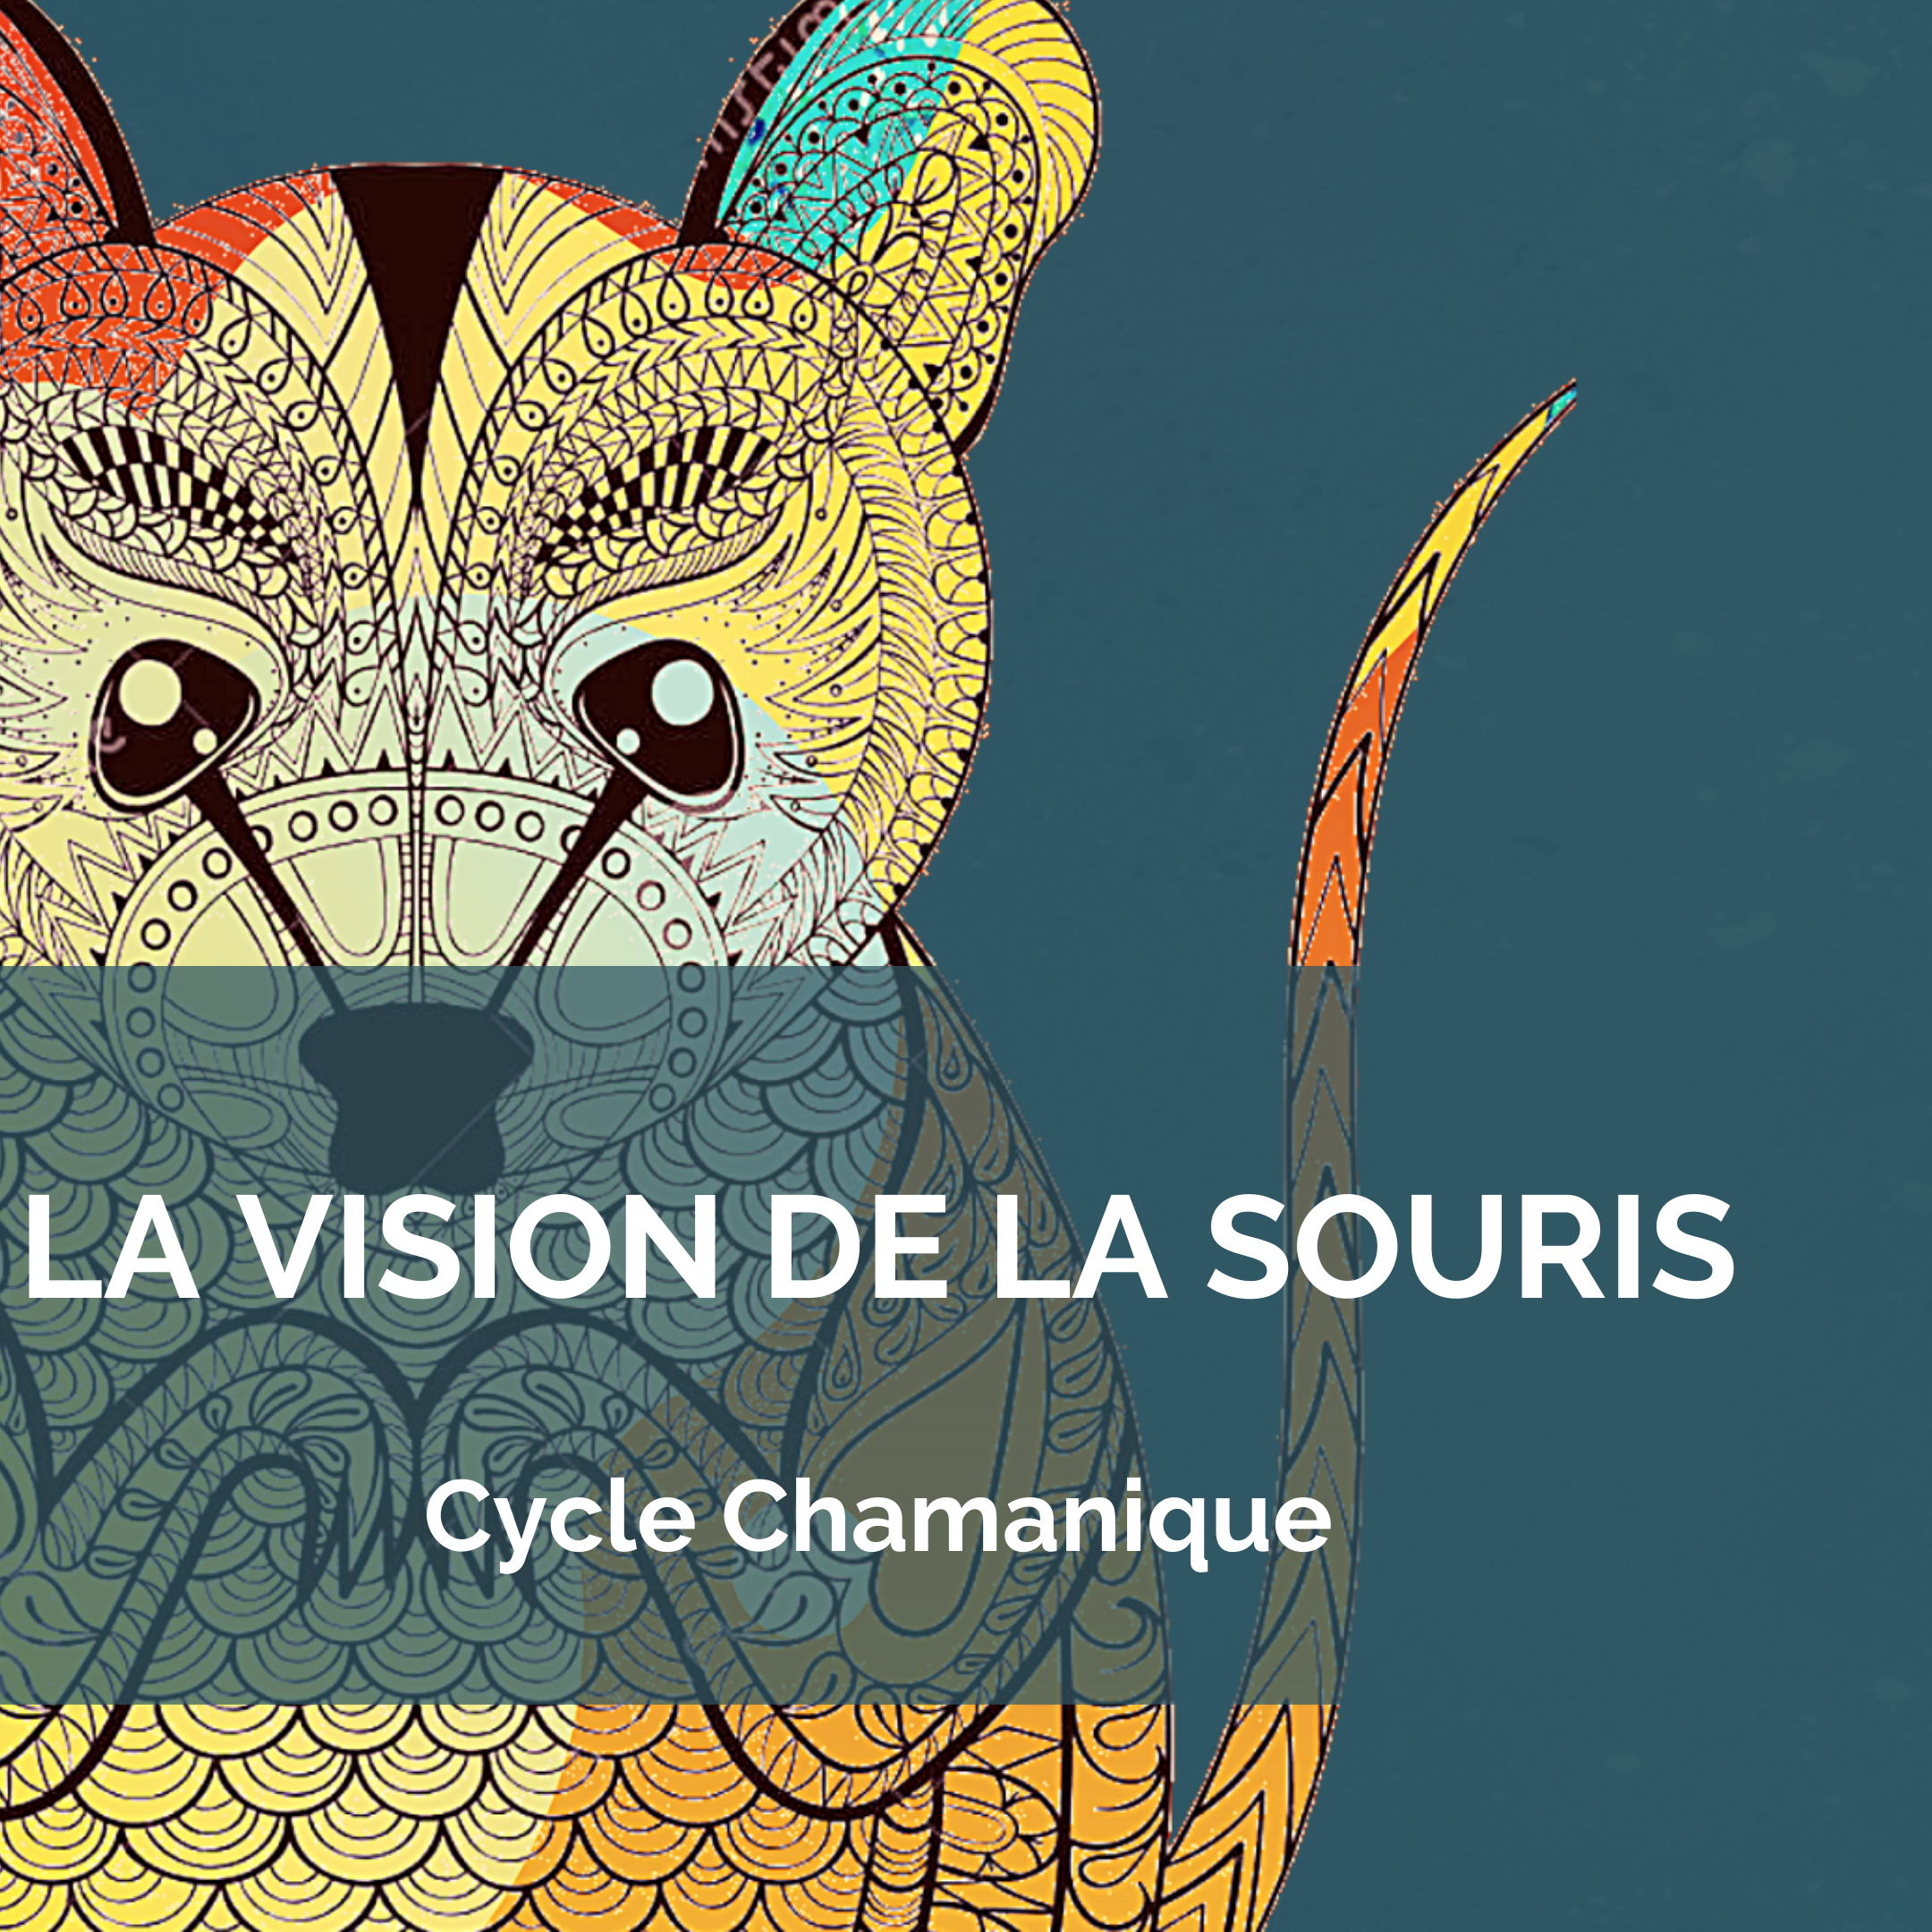 Cycle Chamanique De La Vision De La Souris – Le 15 Juin 22